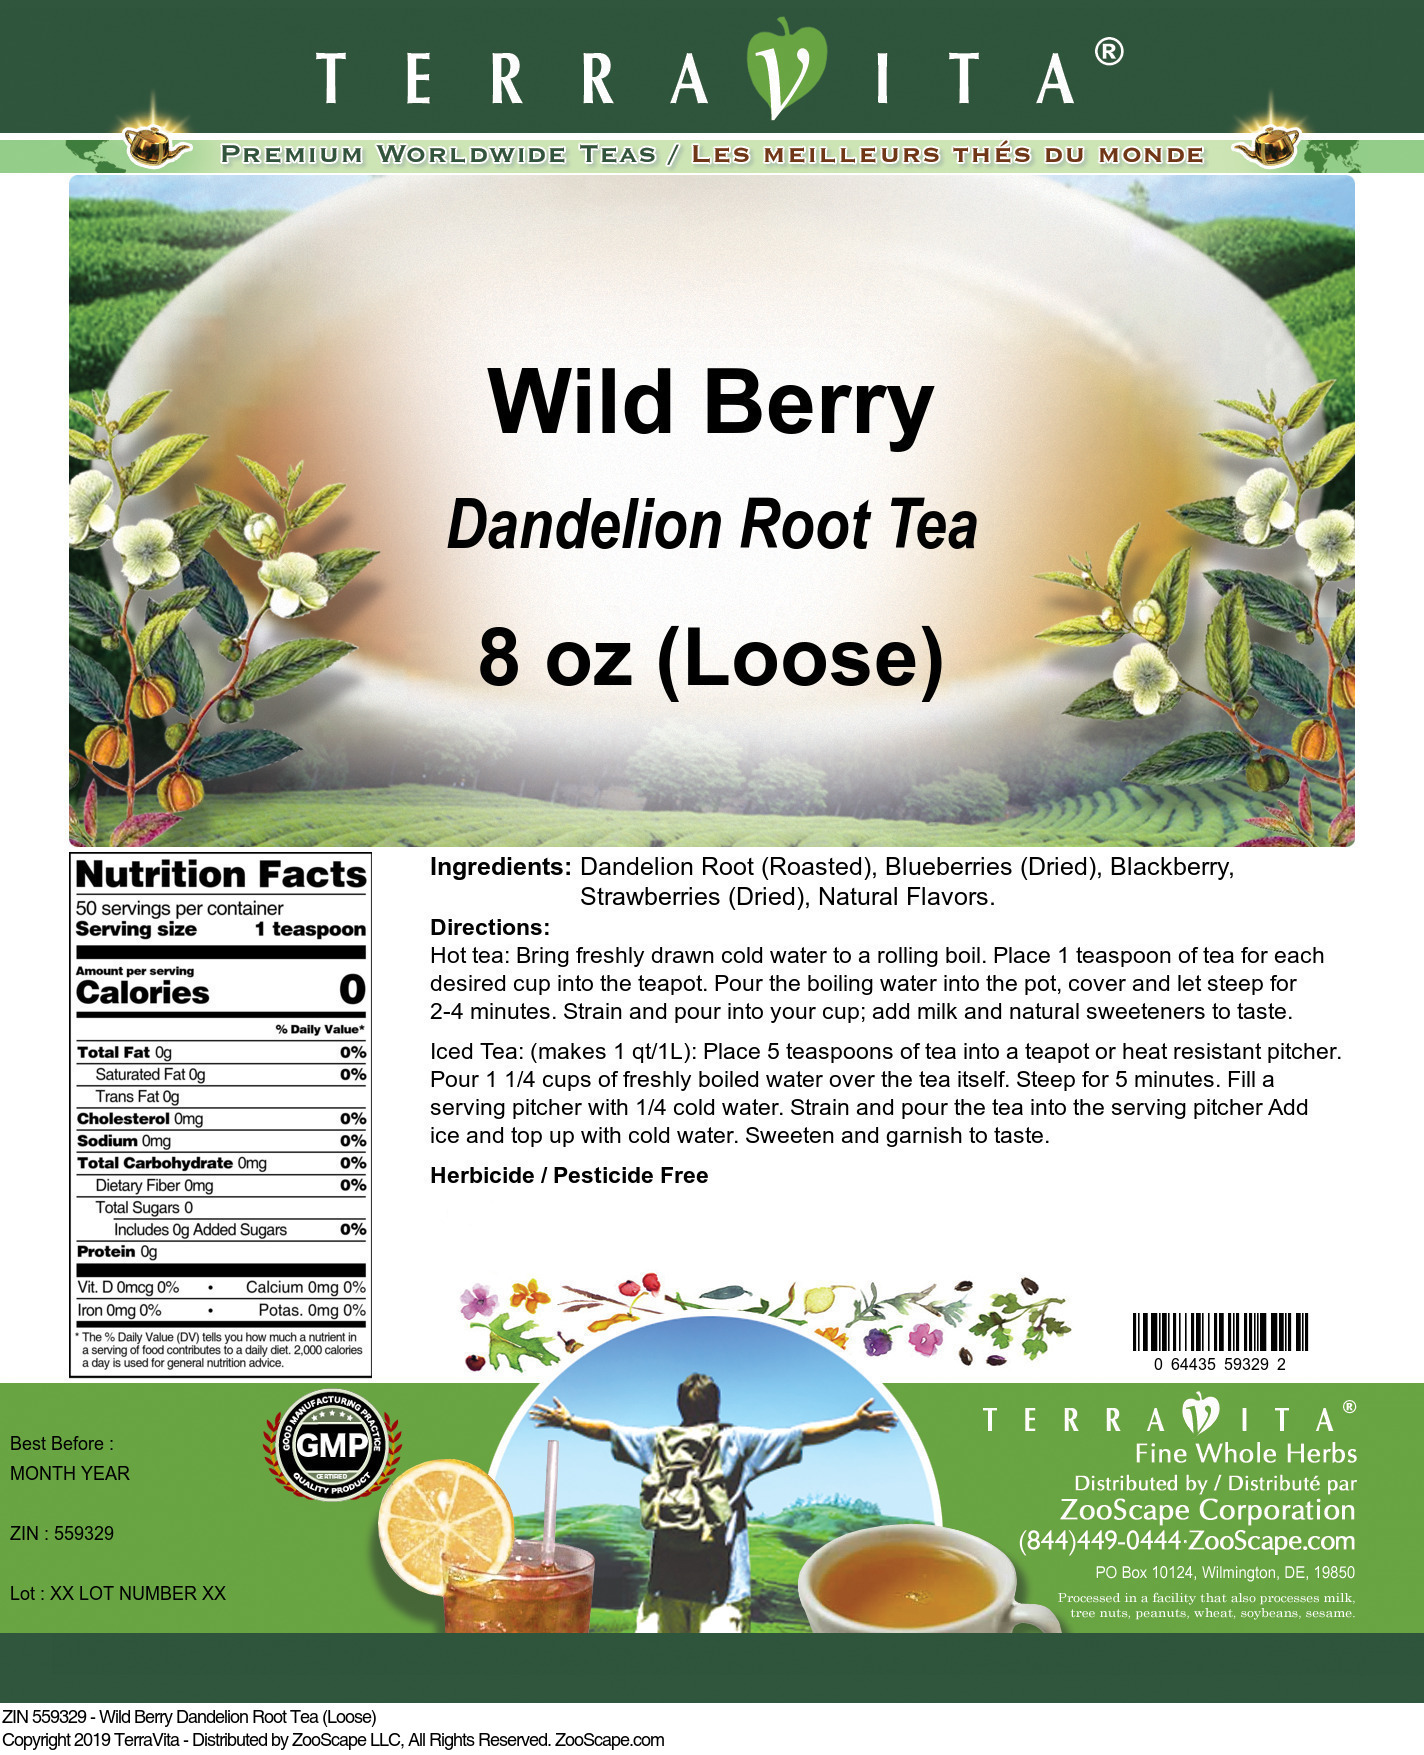 Wild Berry Dandelion Root Tea (Loose) - Label